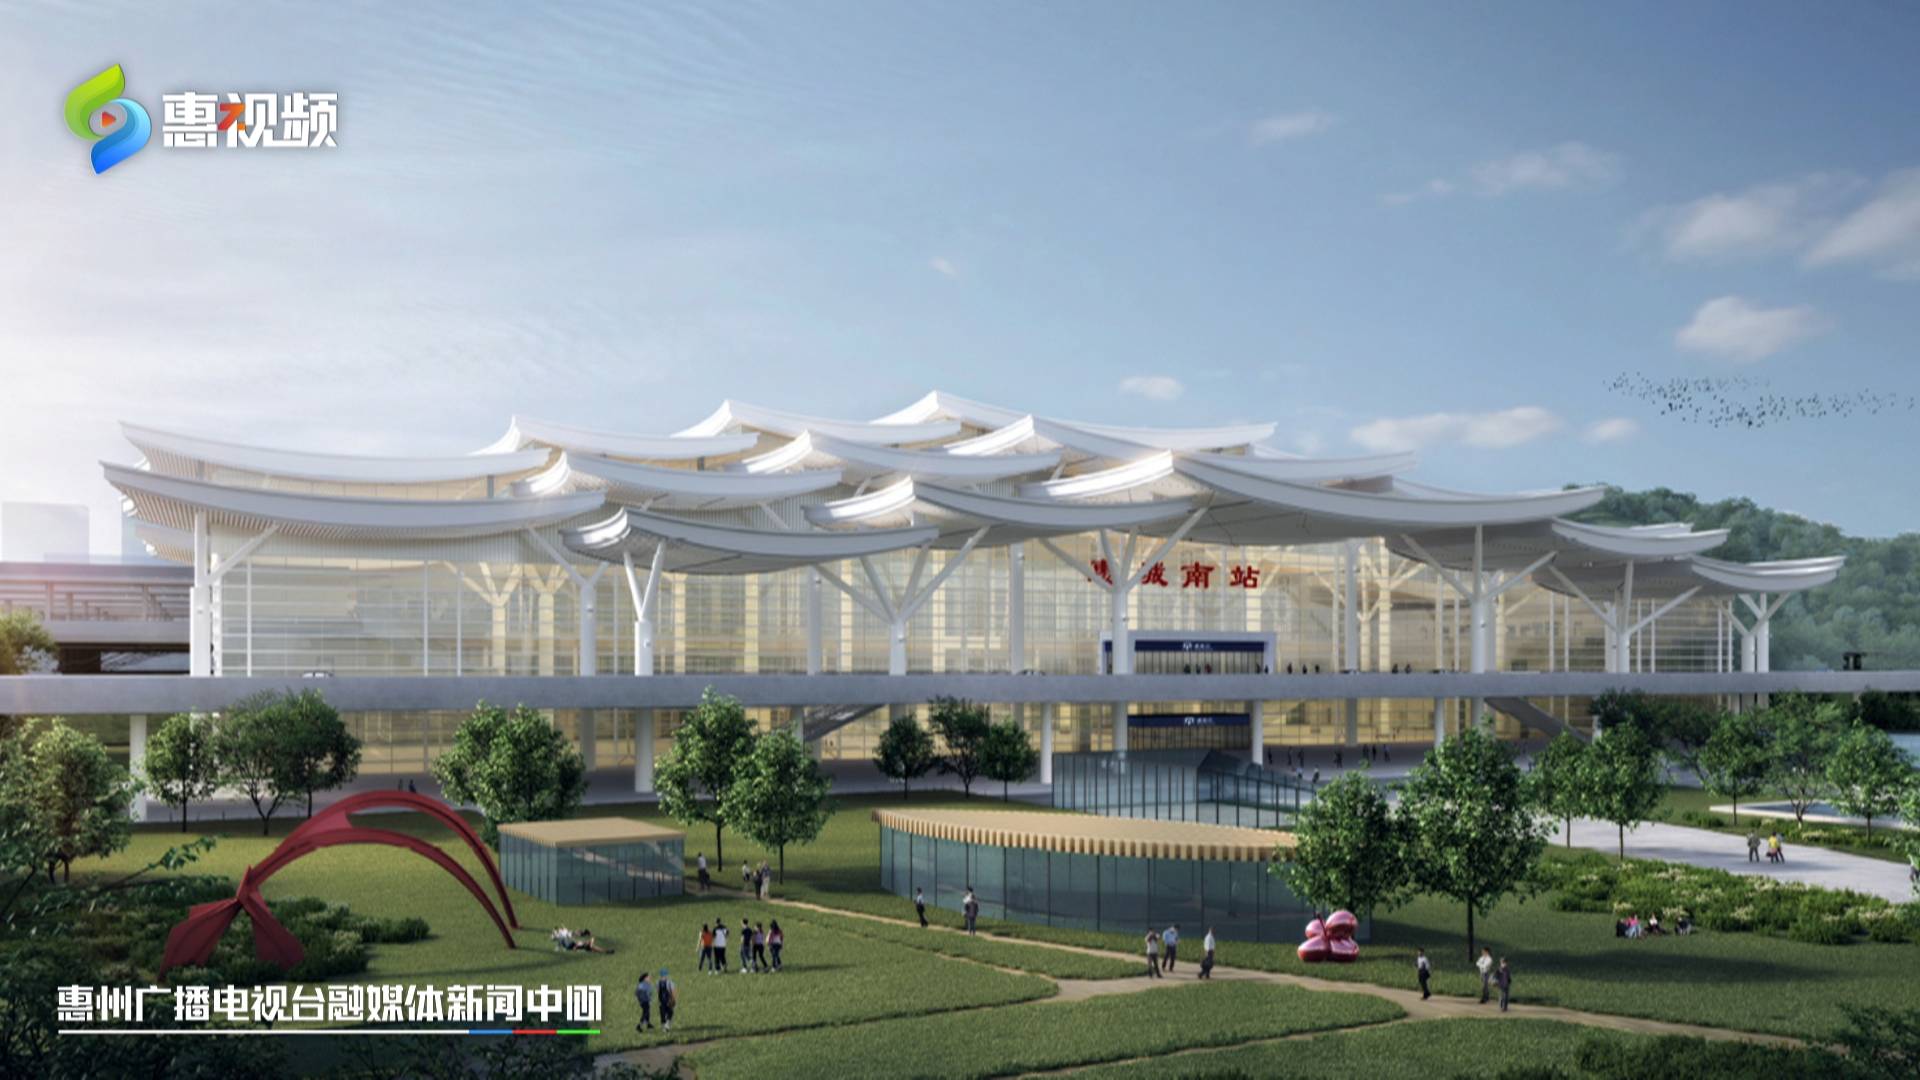 加快推进建设,计划今年建成通车,惠州境内设罗浮山站,博罗站,惠城南站